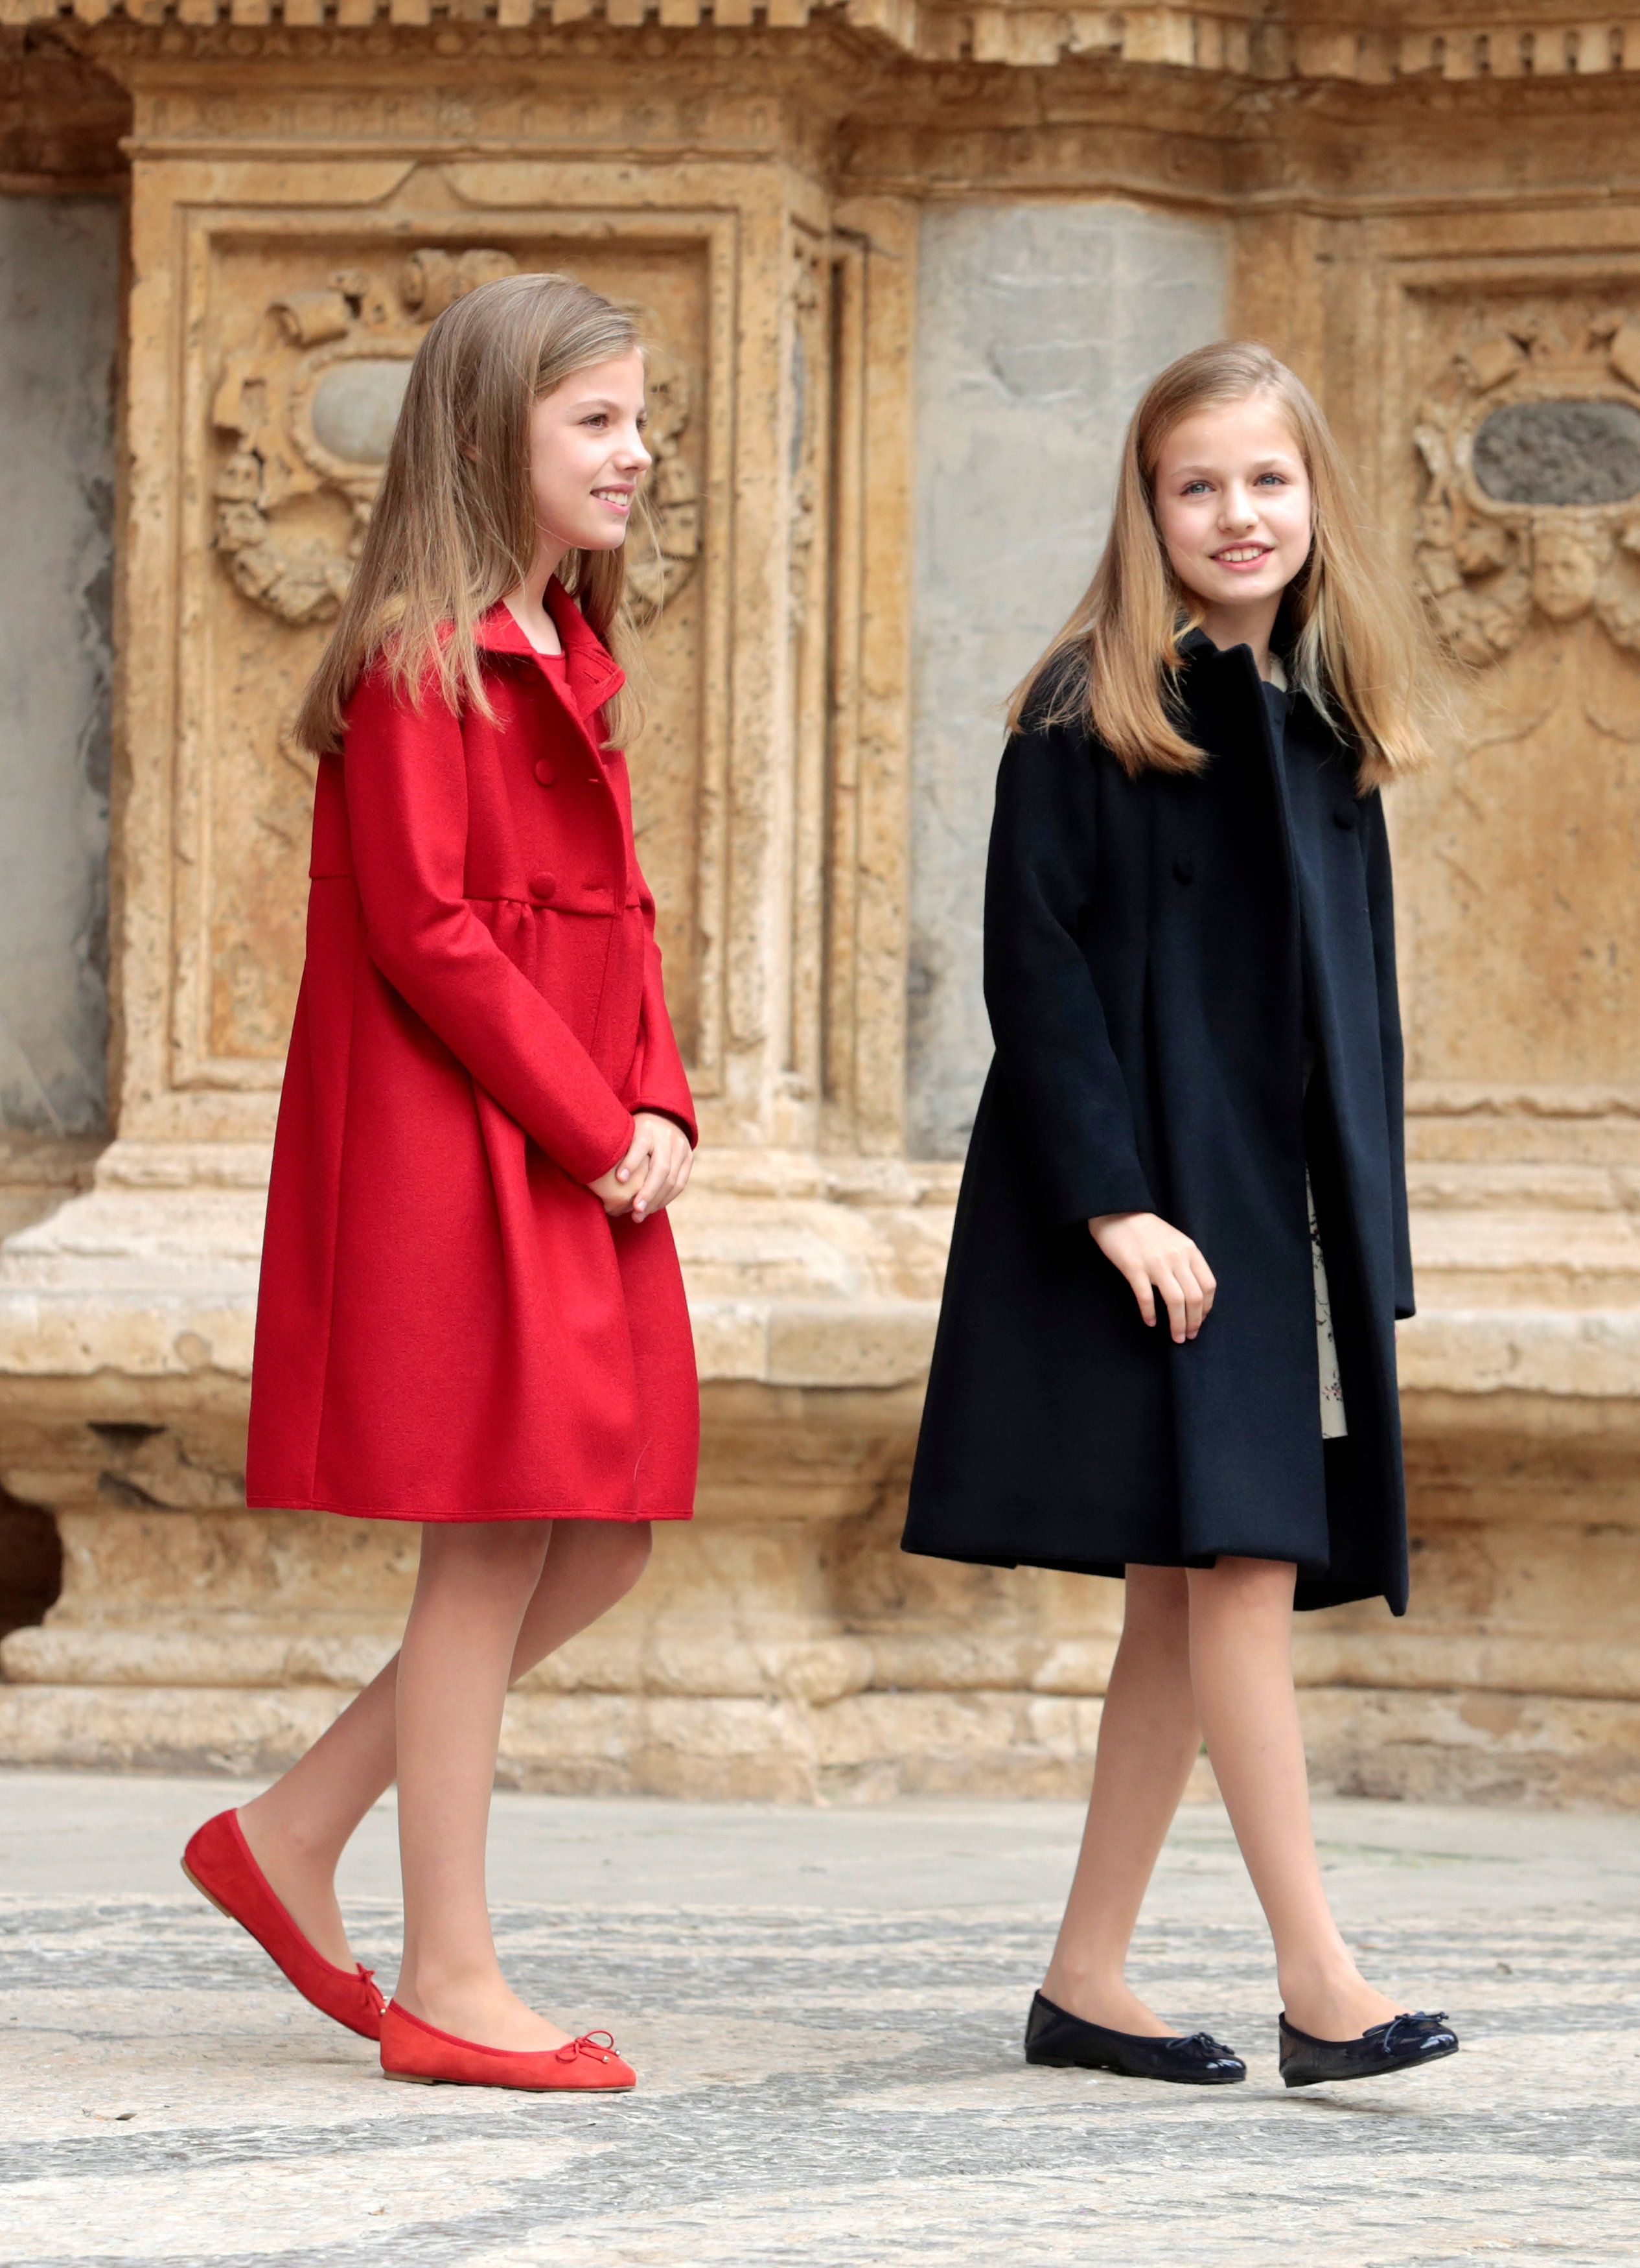 スペイン王室の美人姉妹 レオノール王女 ソフィア王女に注目